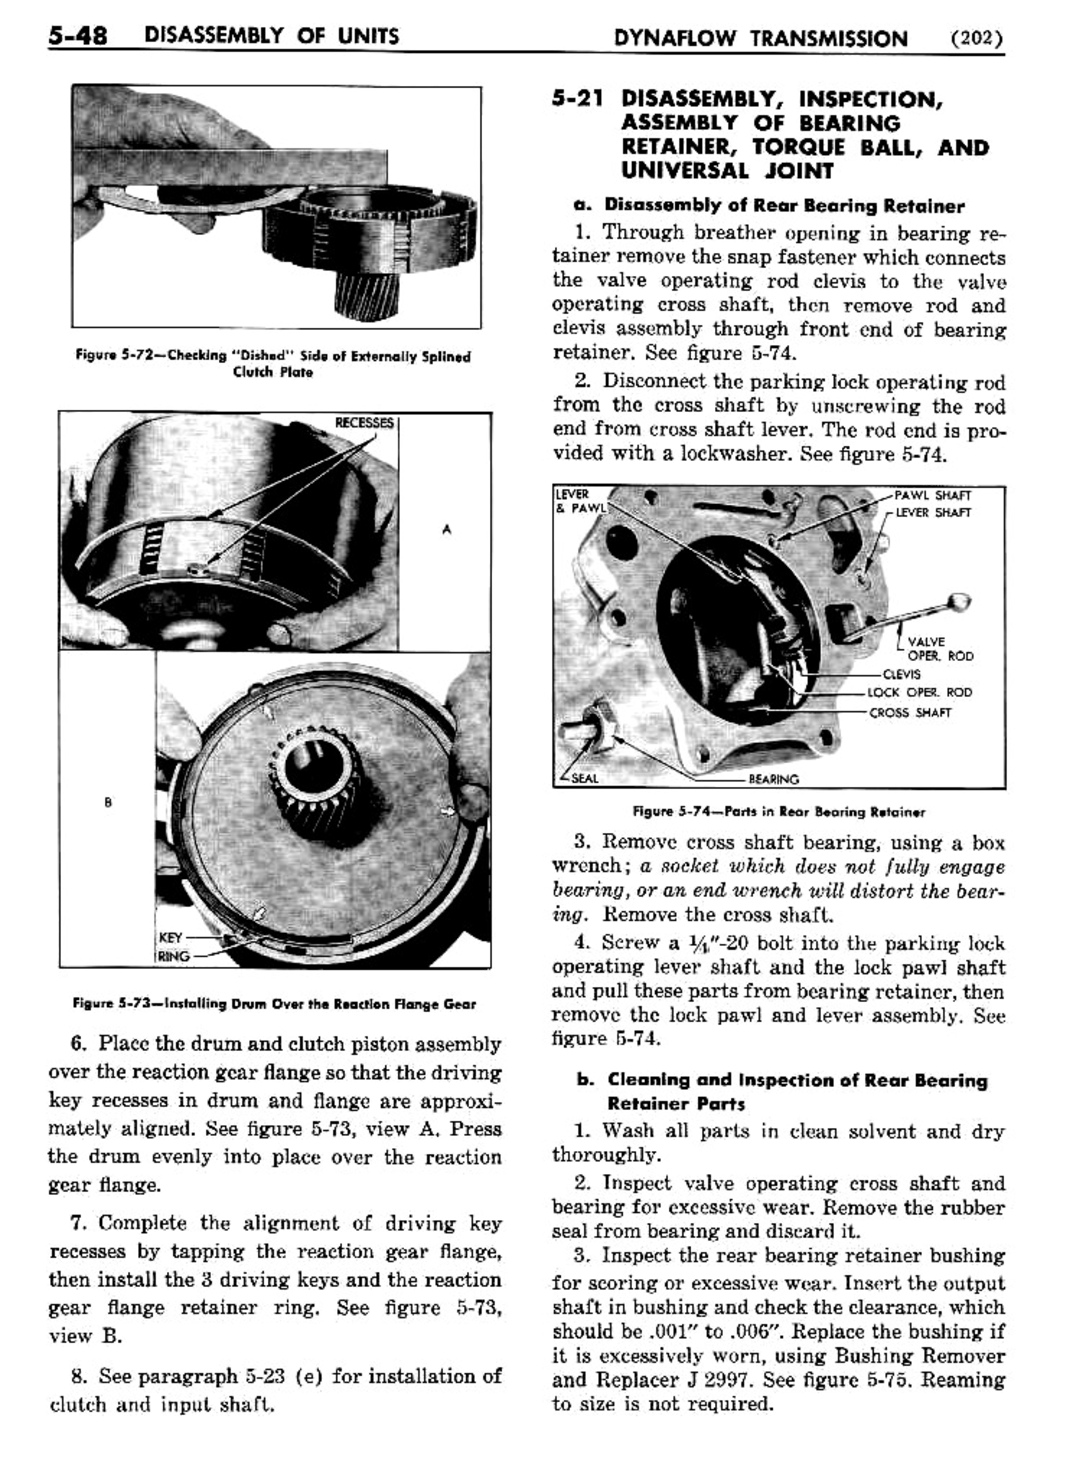 n_06 1954 Buick Shop Manual - Dynaflow-048-048.jpg